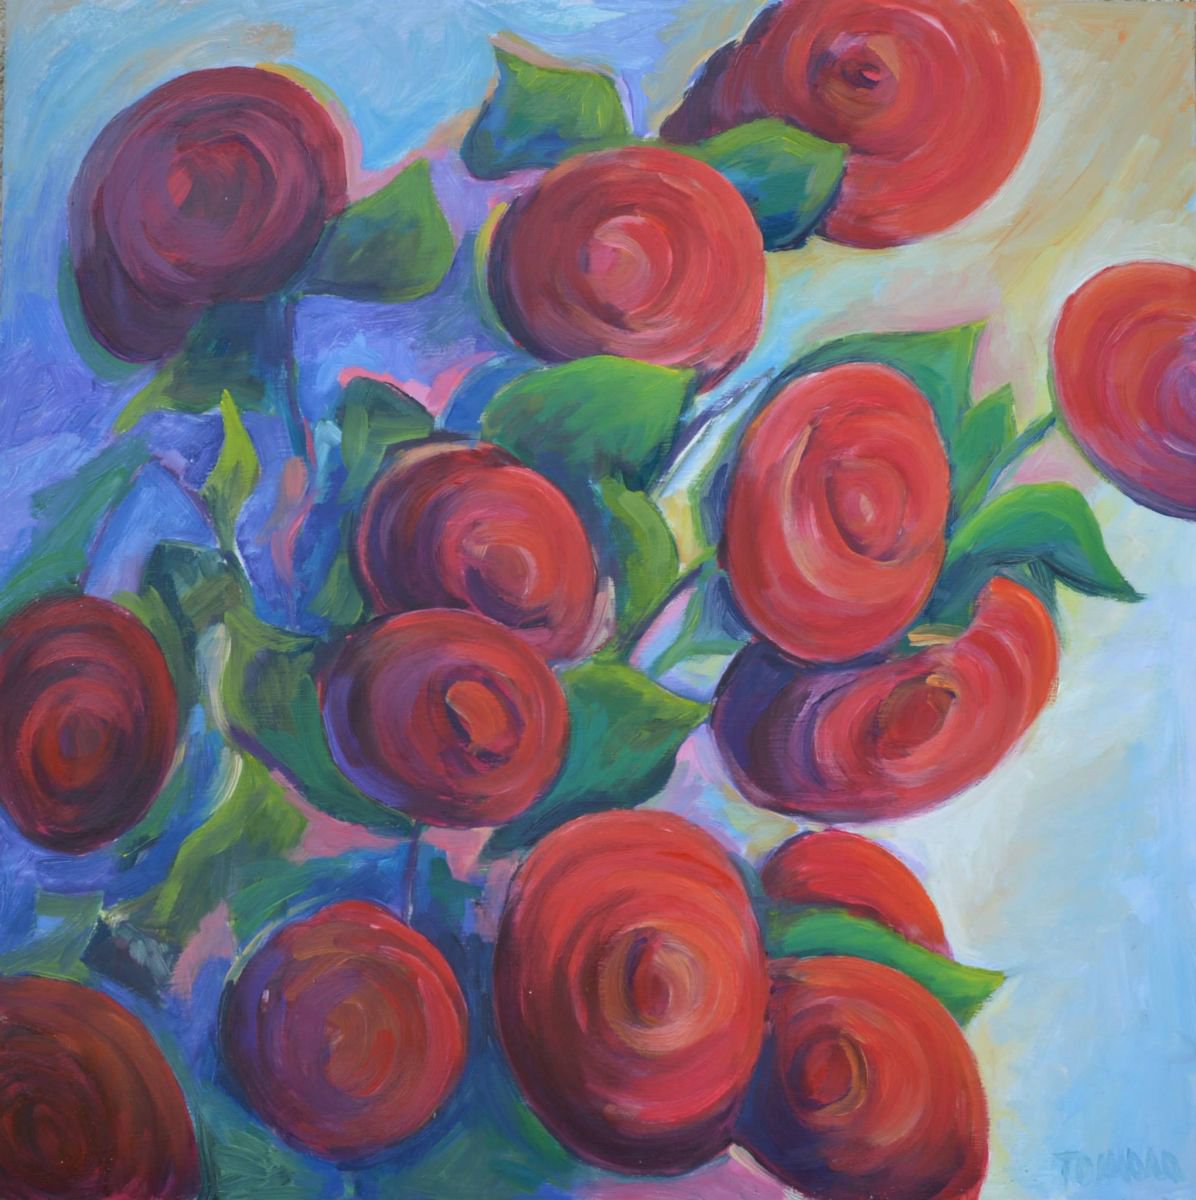 Red roses by Tamara pitaler kori?